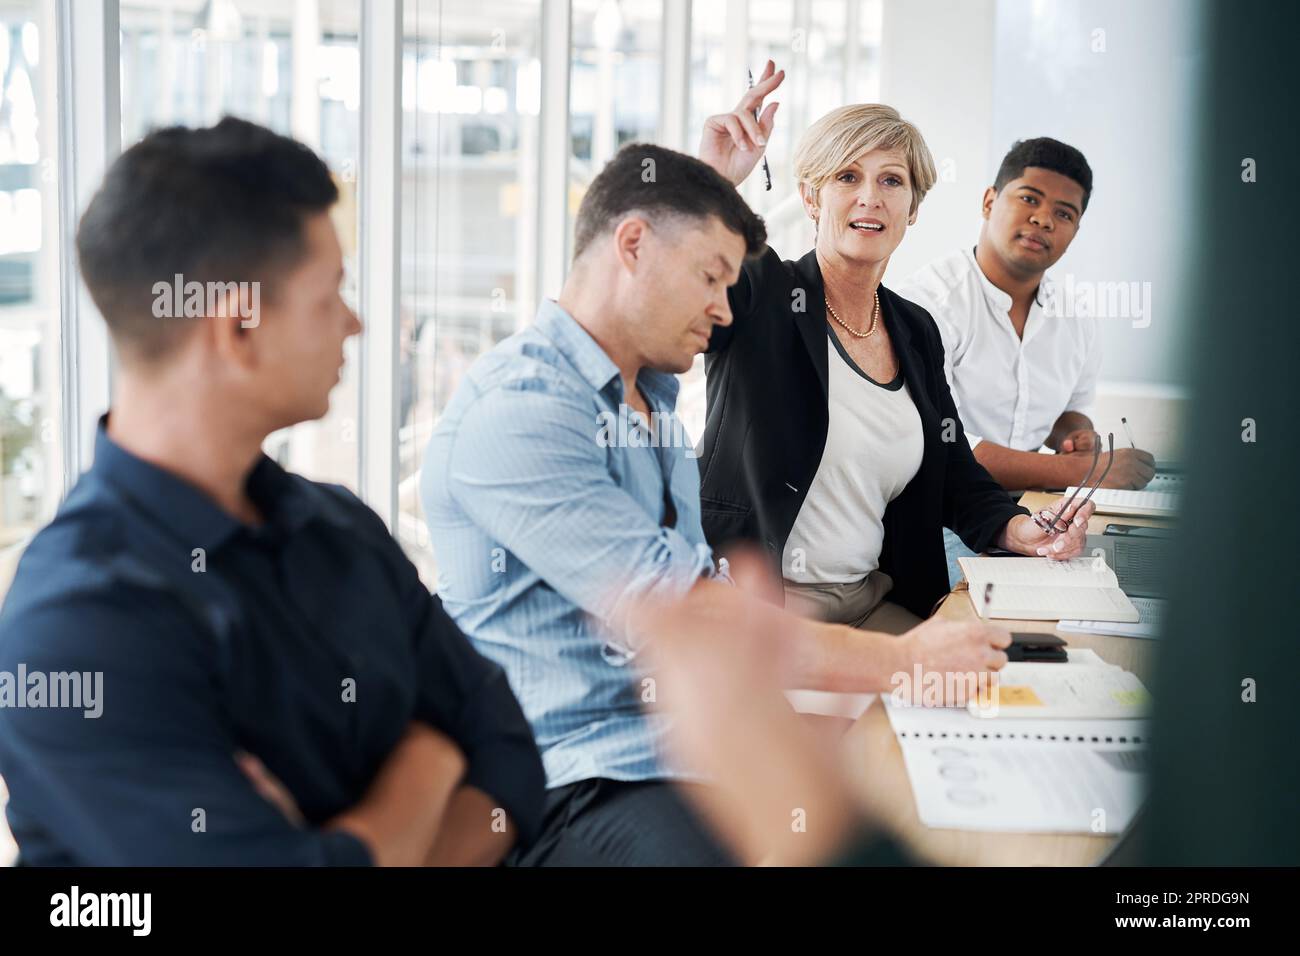 Eine Frage, die eine Geschäftskonferenz auslöste. Eine reife Geschäftsfrau hob ihre Hand, um während eines Meetings Fragen zu stellen. Stockfoto